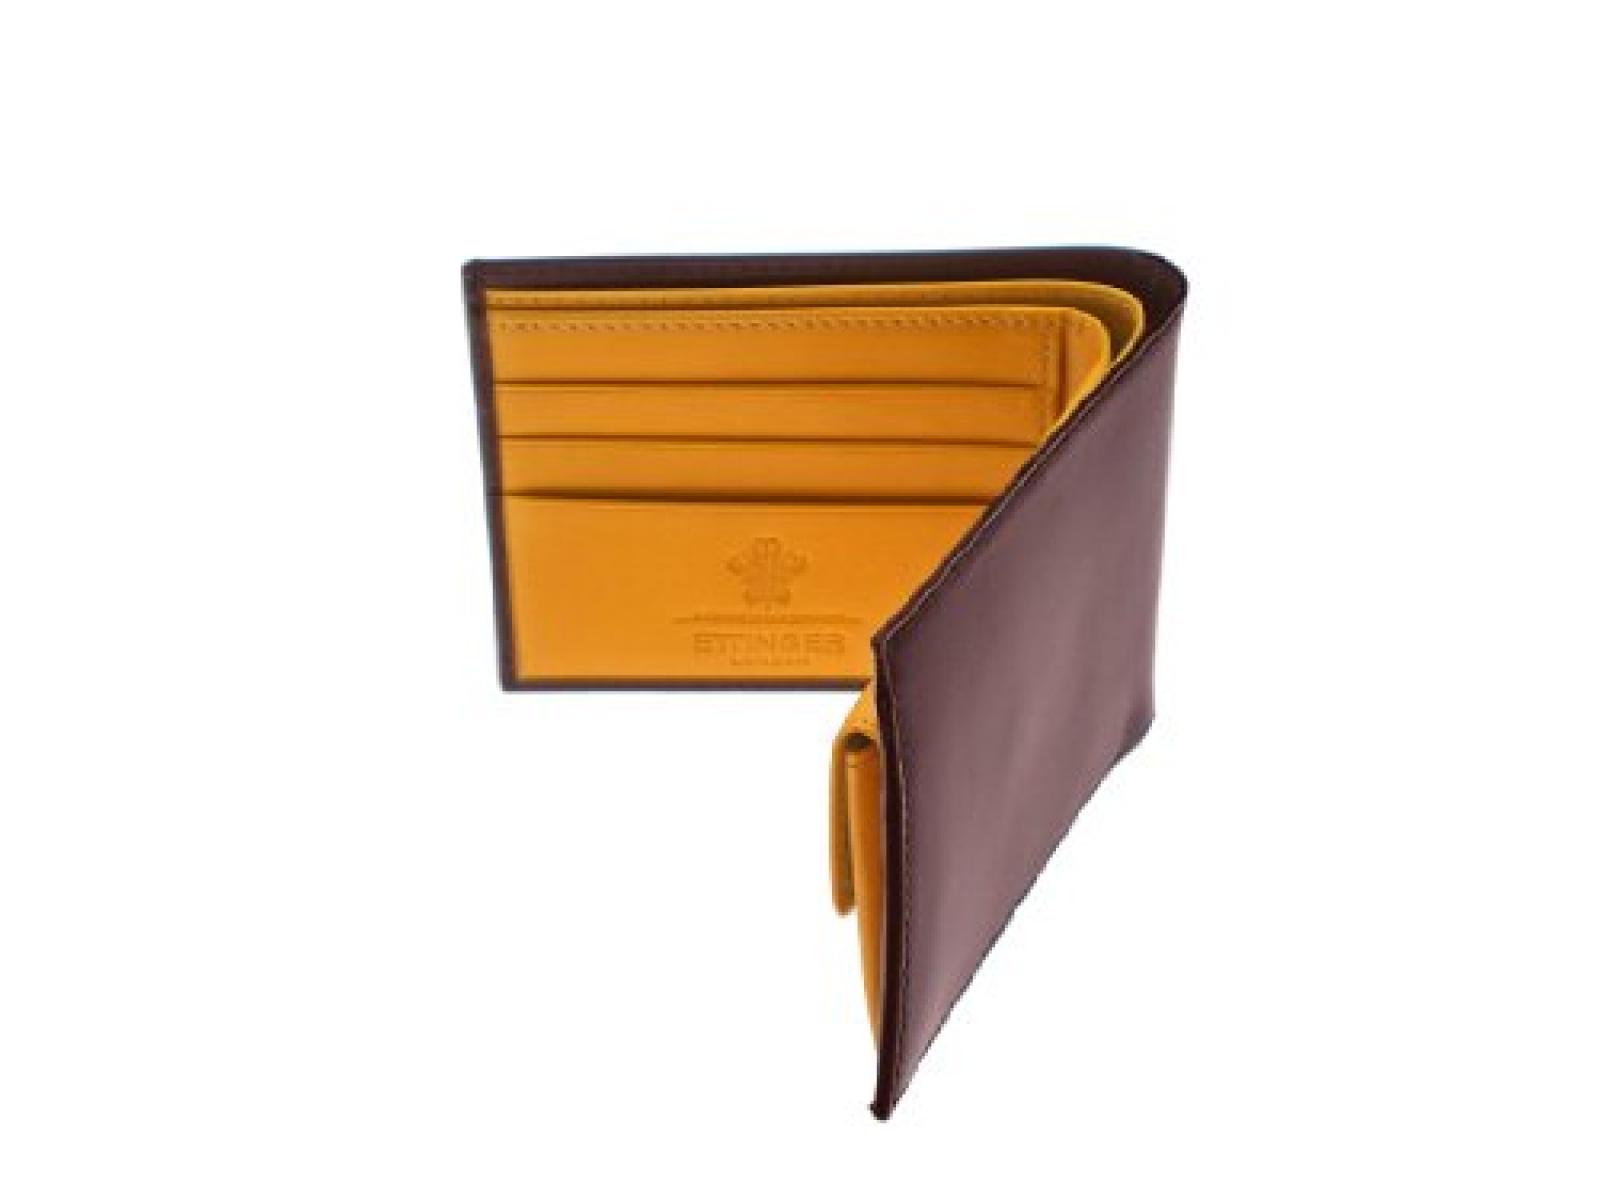 Ettinger - Brieftasche aus Leder mit Münzfach - Braun außen / Hellbraun innen 